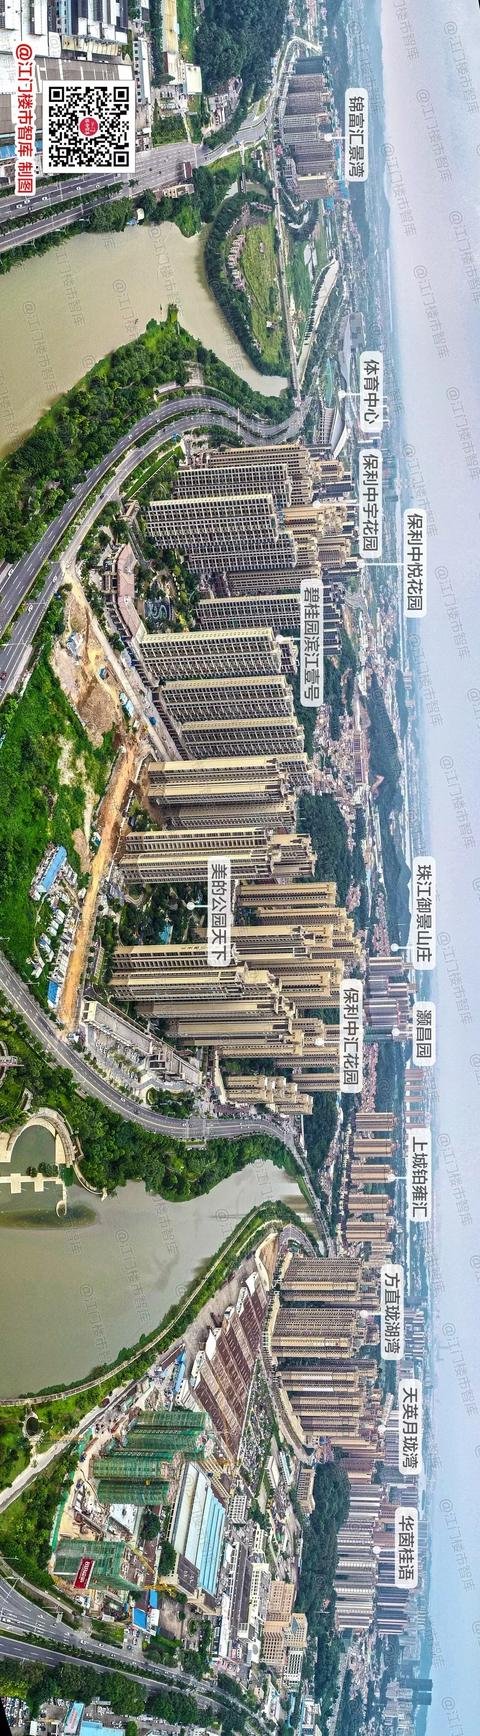 震撼!10年30余张航拍图,滨江新区的变化颠覆想象.